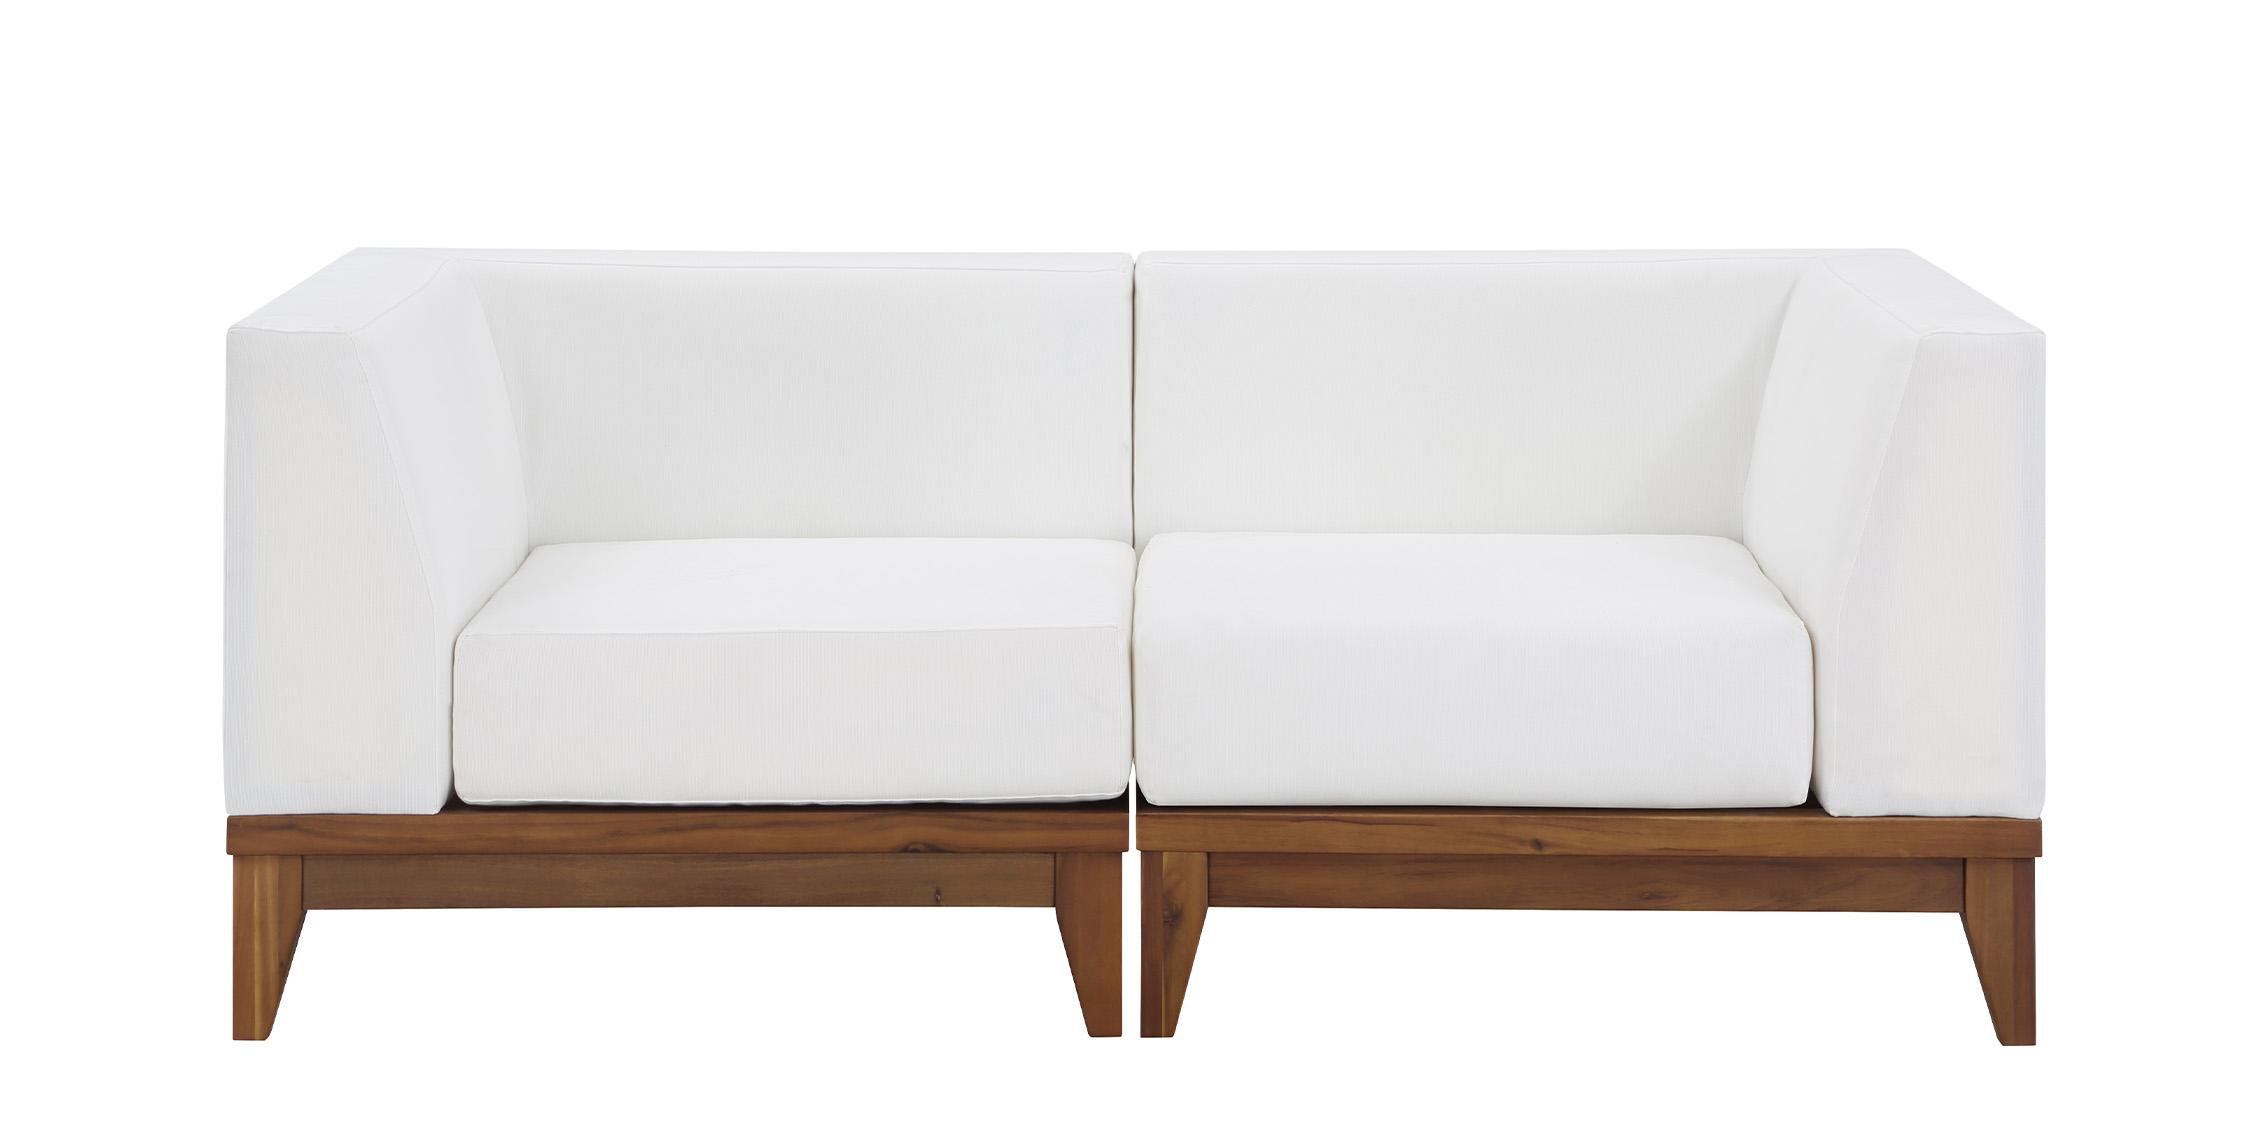 

    
Meridian Furniture RIO 389White-S62 Patio Moular Sofa Off-White/Brown 389White-S62
